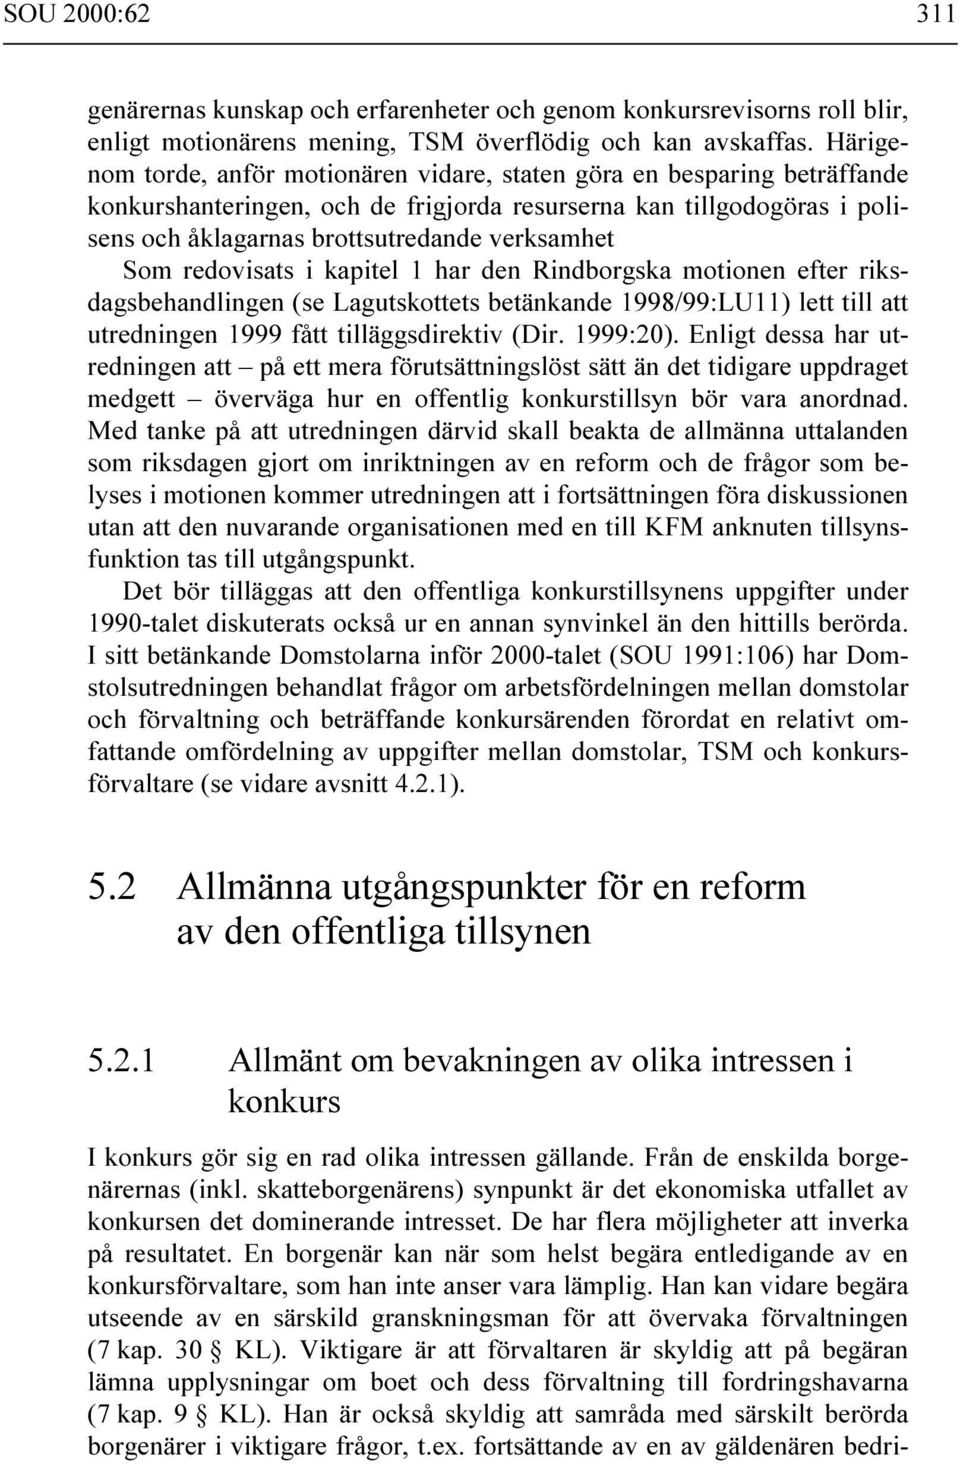 Som redovisats i kapitel 1 har den Rindborgska motionen efter riksdagsbehandlingen (se Lagutskottets betänkande 1998/99:LU11) lett till att utredningen 1999 fått tilläggsdirektiv (Dir. 1999:20).